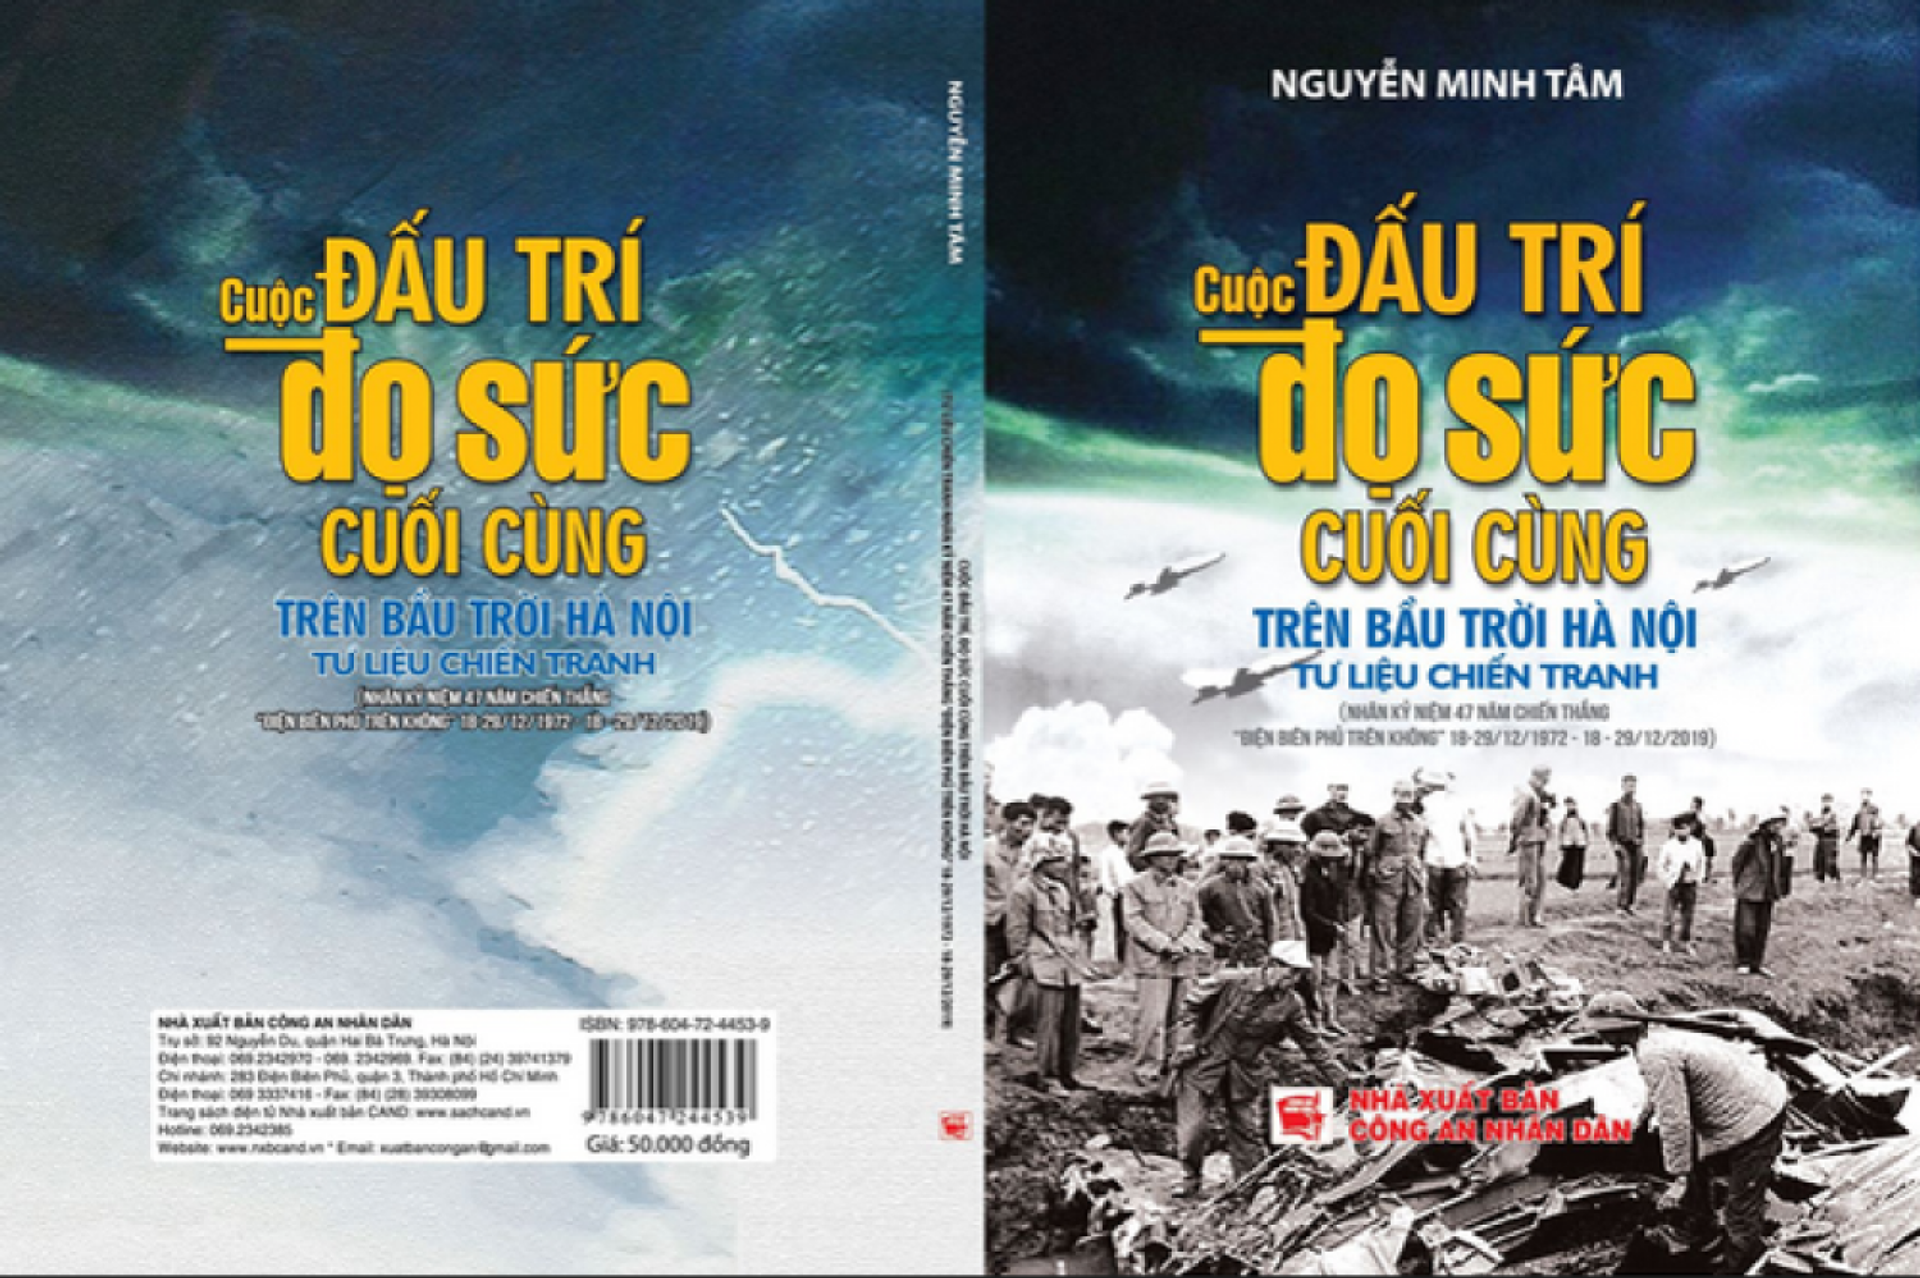 Bìa cuốn sách “Cuộc đọ sức và đấu trí cuối cùng trên bầu trời Hà Nội” - Sputnik Việt Nam, 1920, 19.12.2022